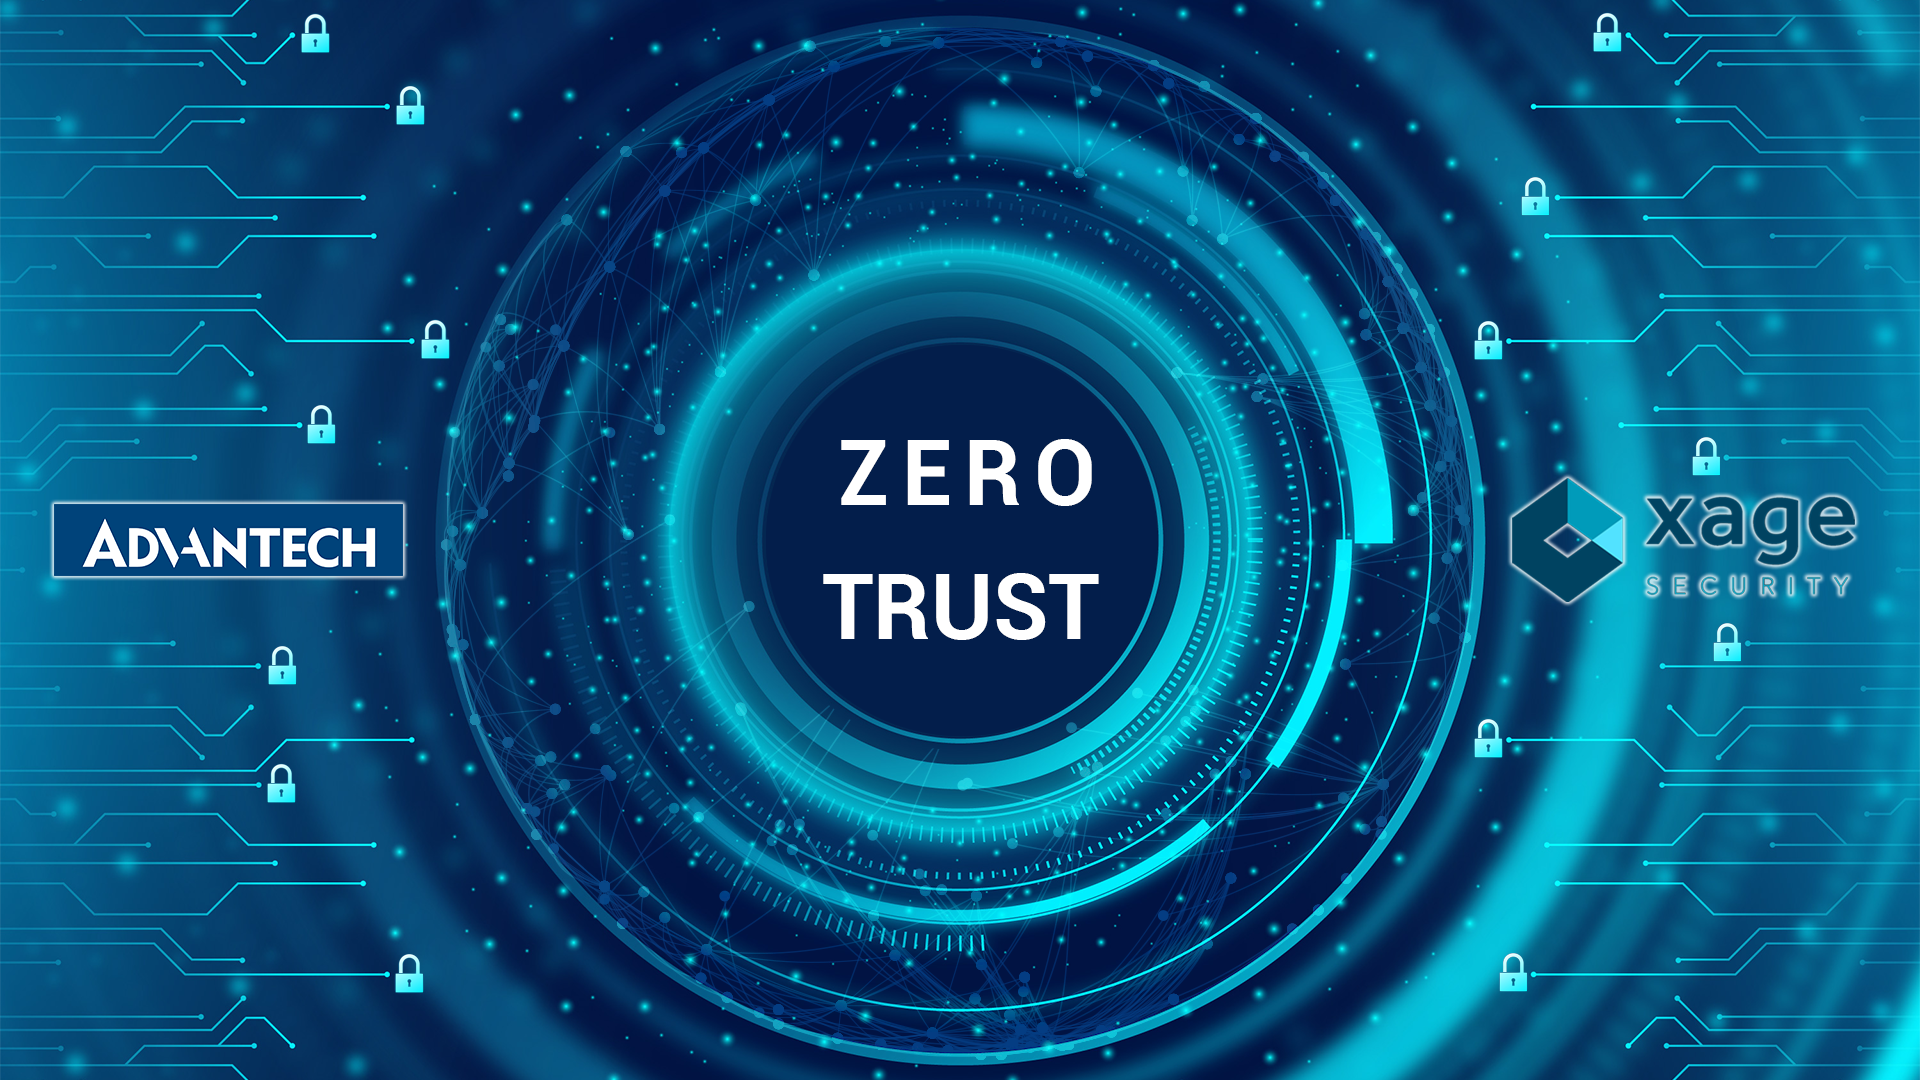 Advantech et Xage pour une cybersécurité Zero Trust